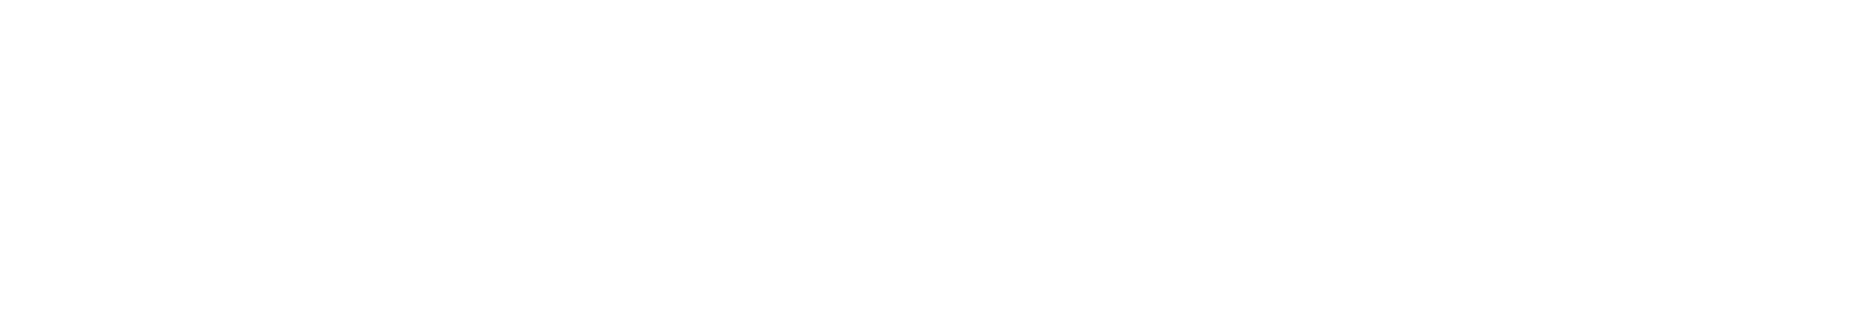 Bernd Rehbein Datenschutzberatung Logo